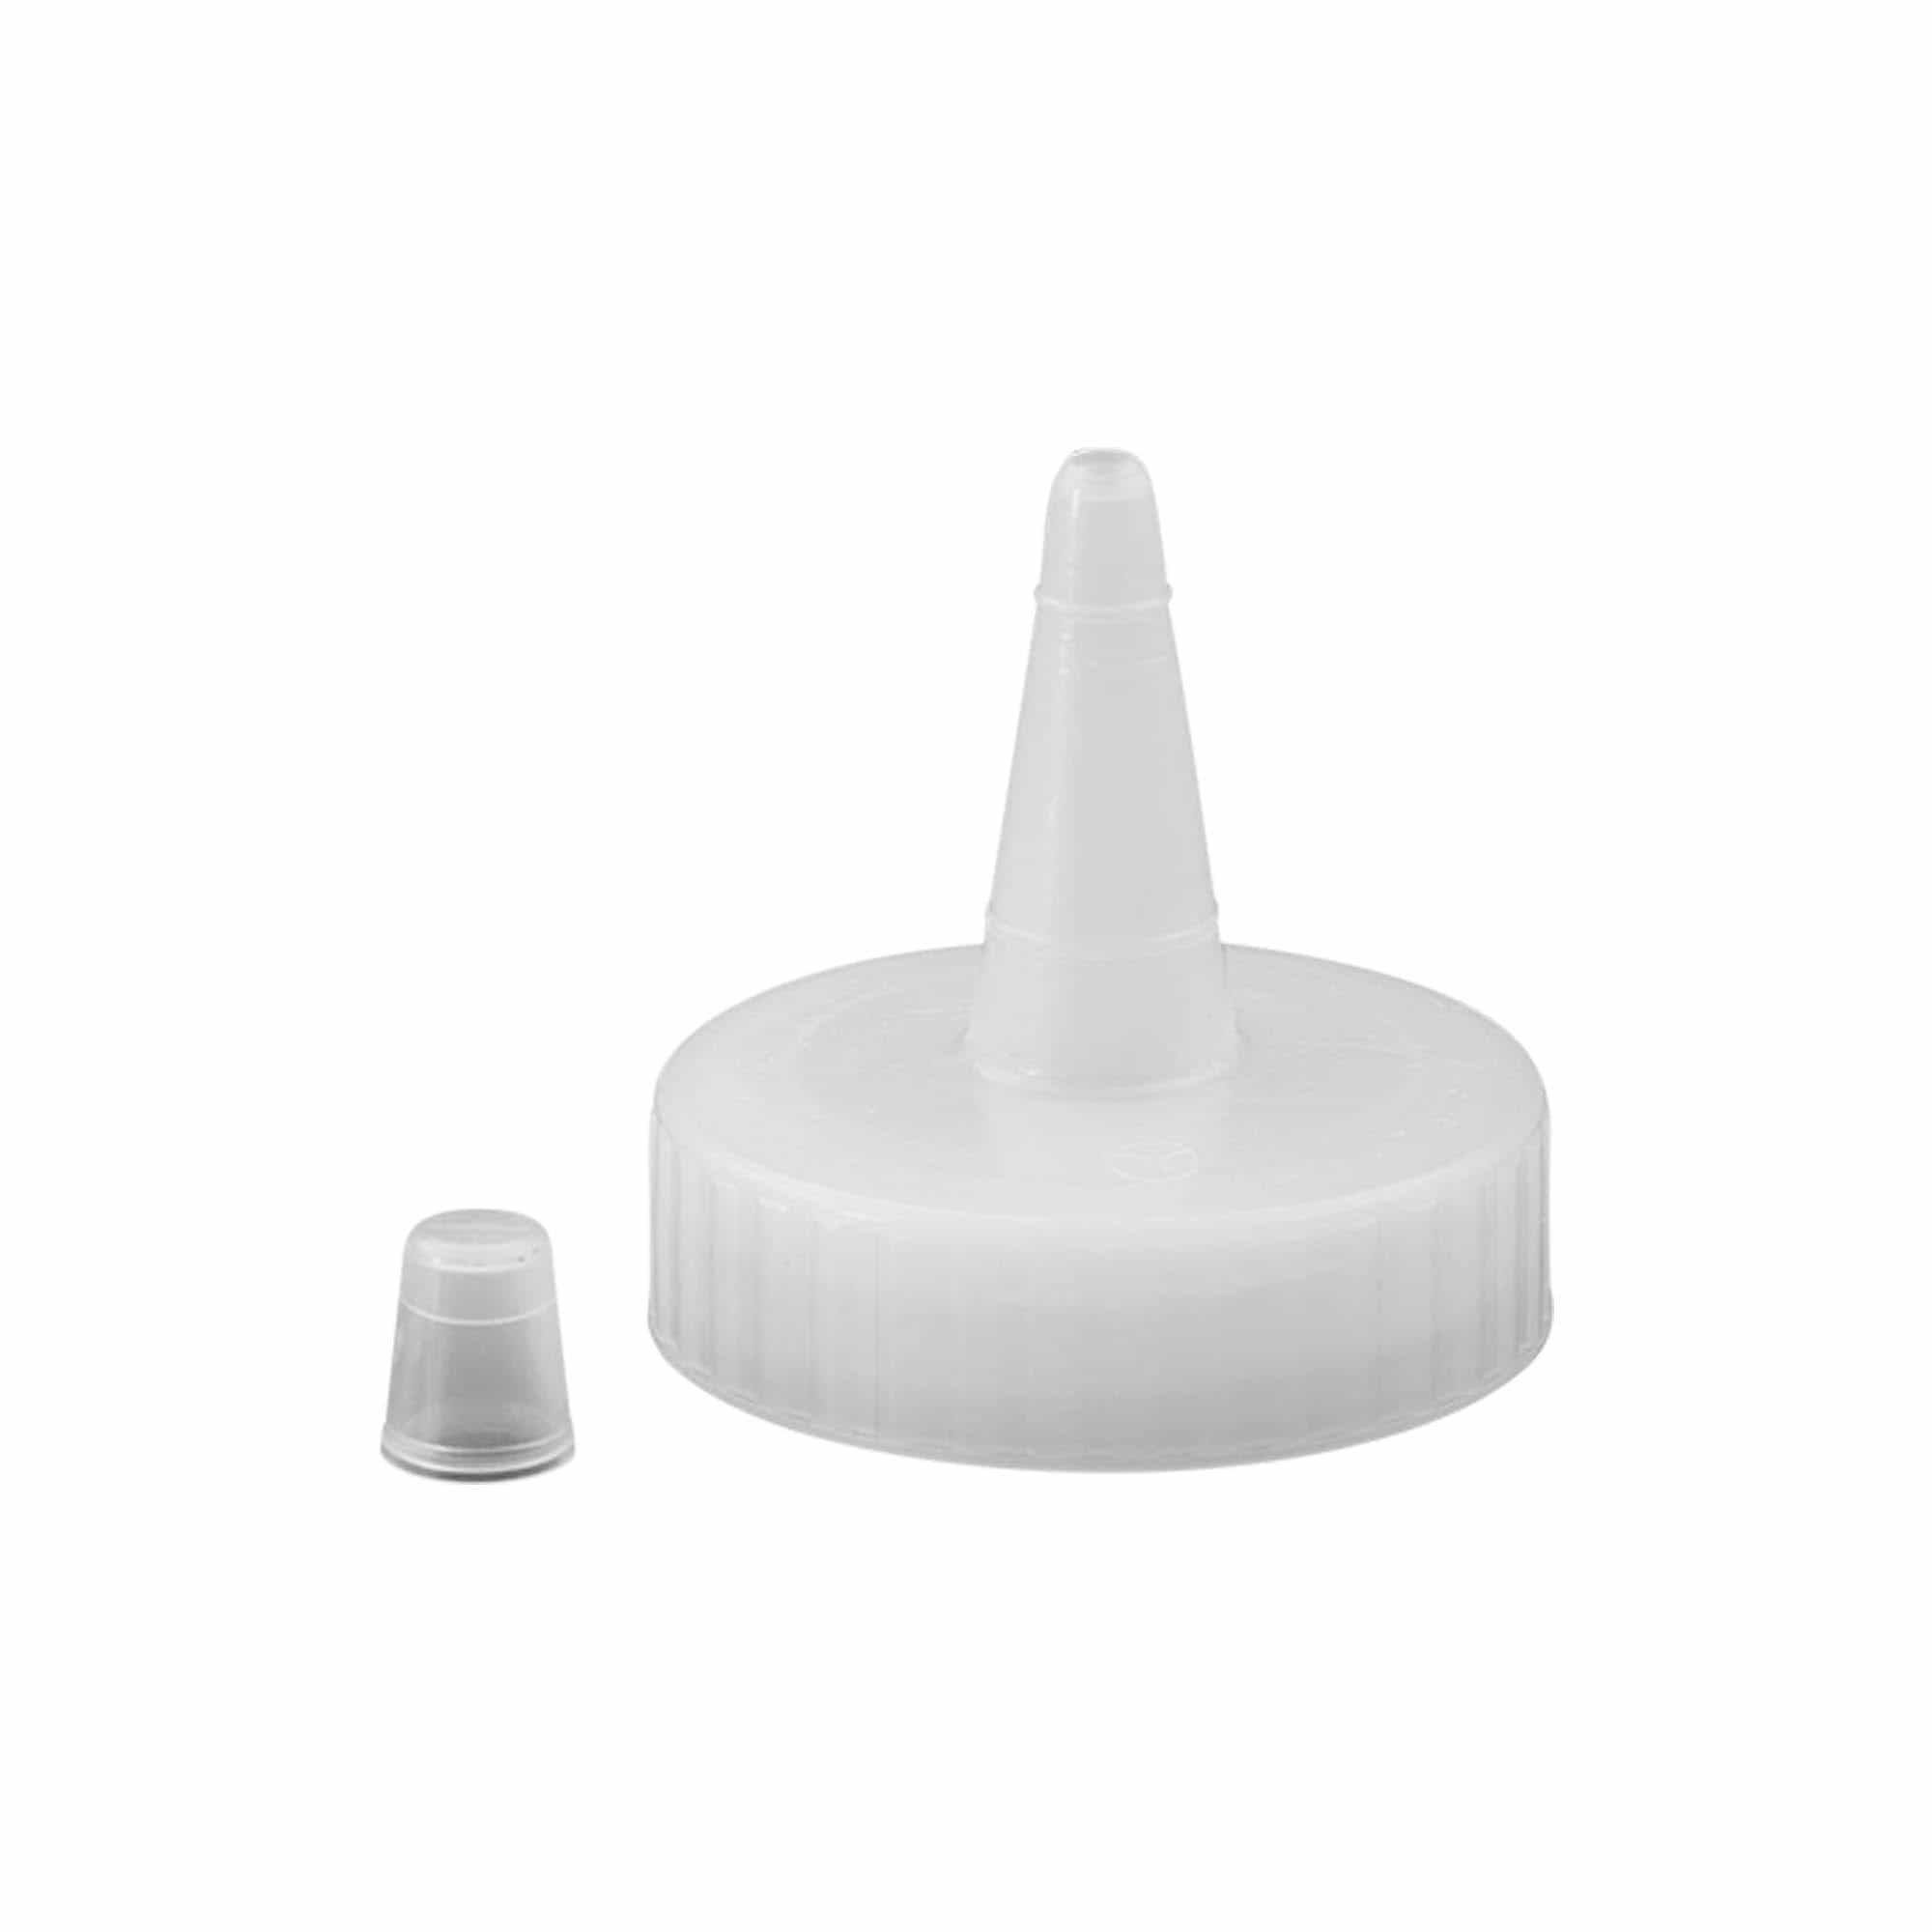 Schraubverschluss Spritztülle, PP-Kunststoff, weiß, für Mündung: GPI 38/400